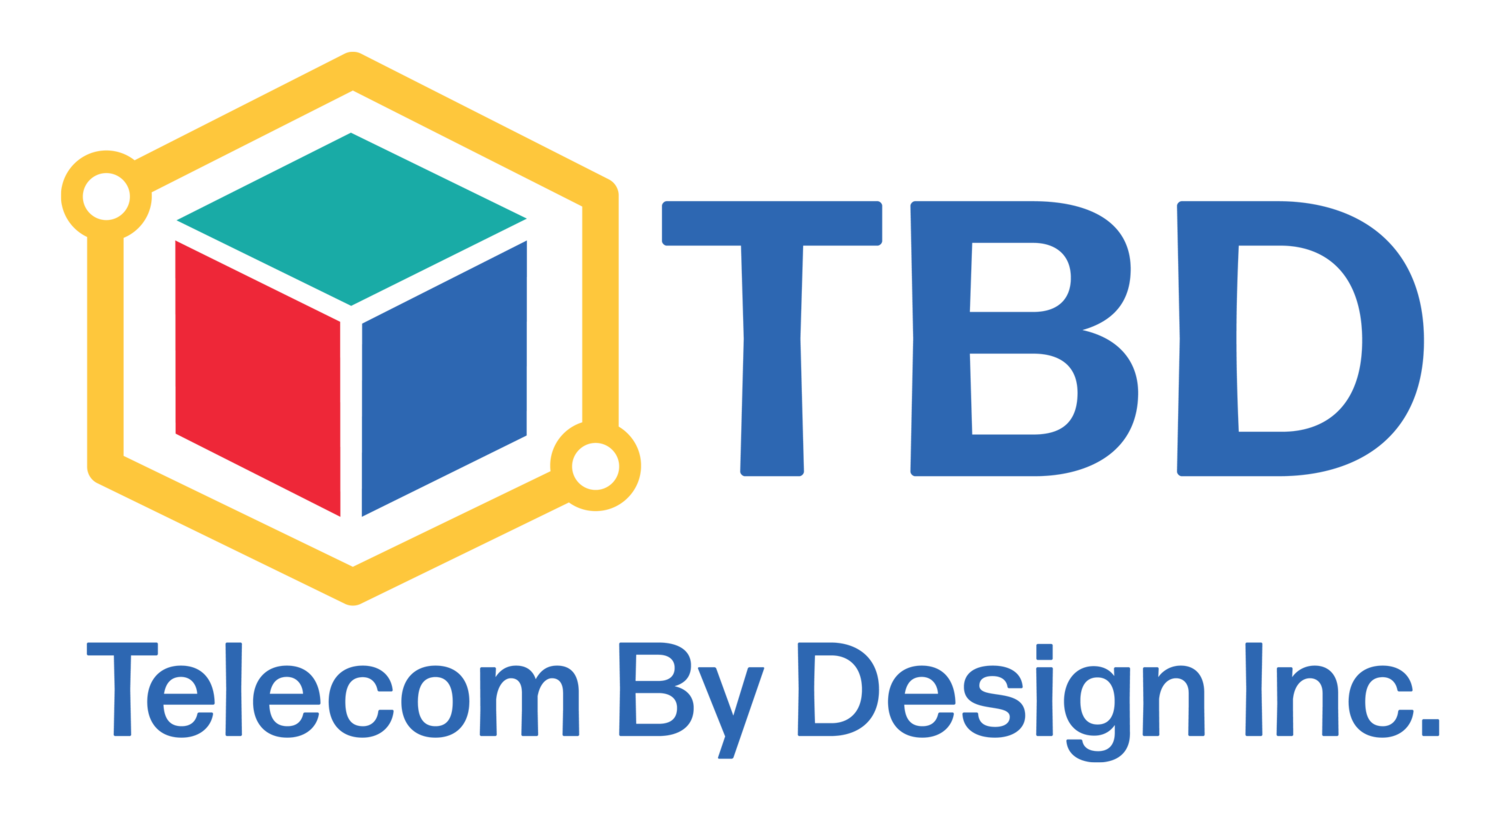 TBD Telecom By Design Inc.